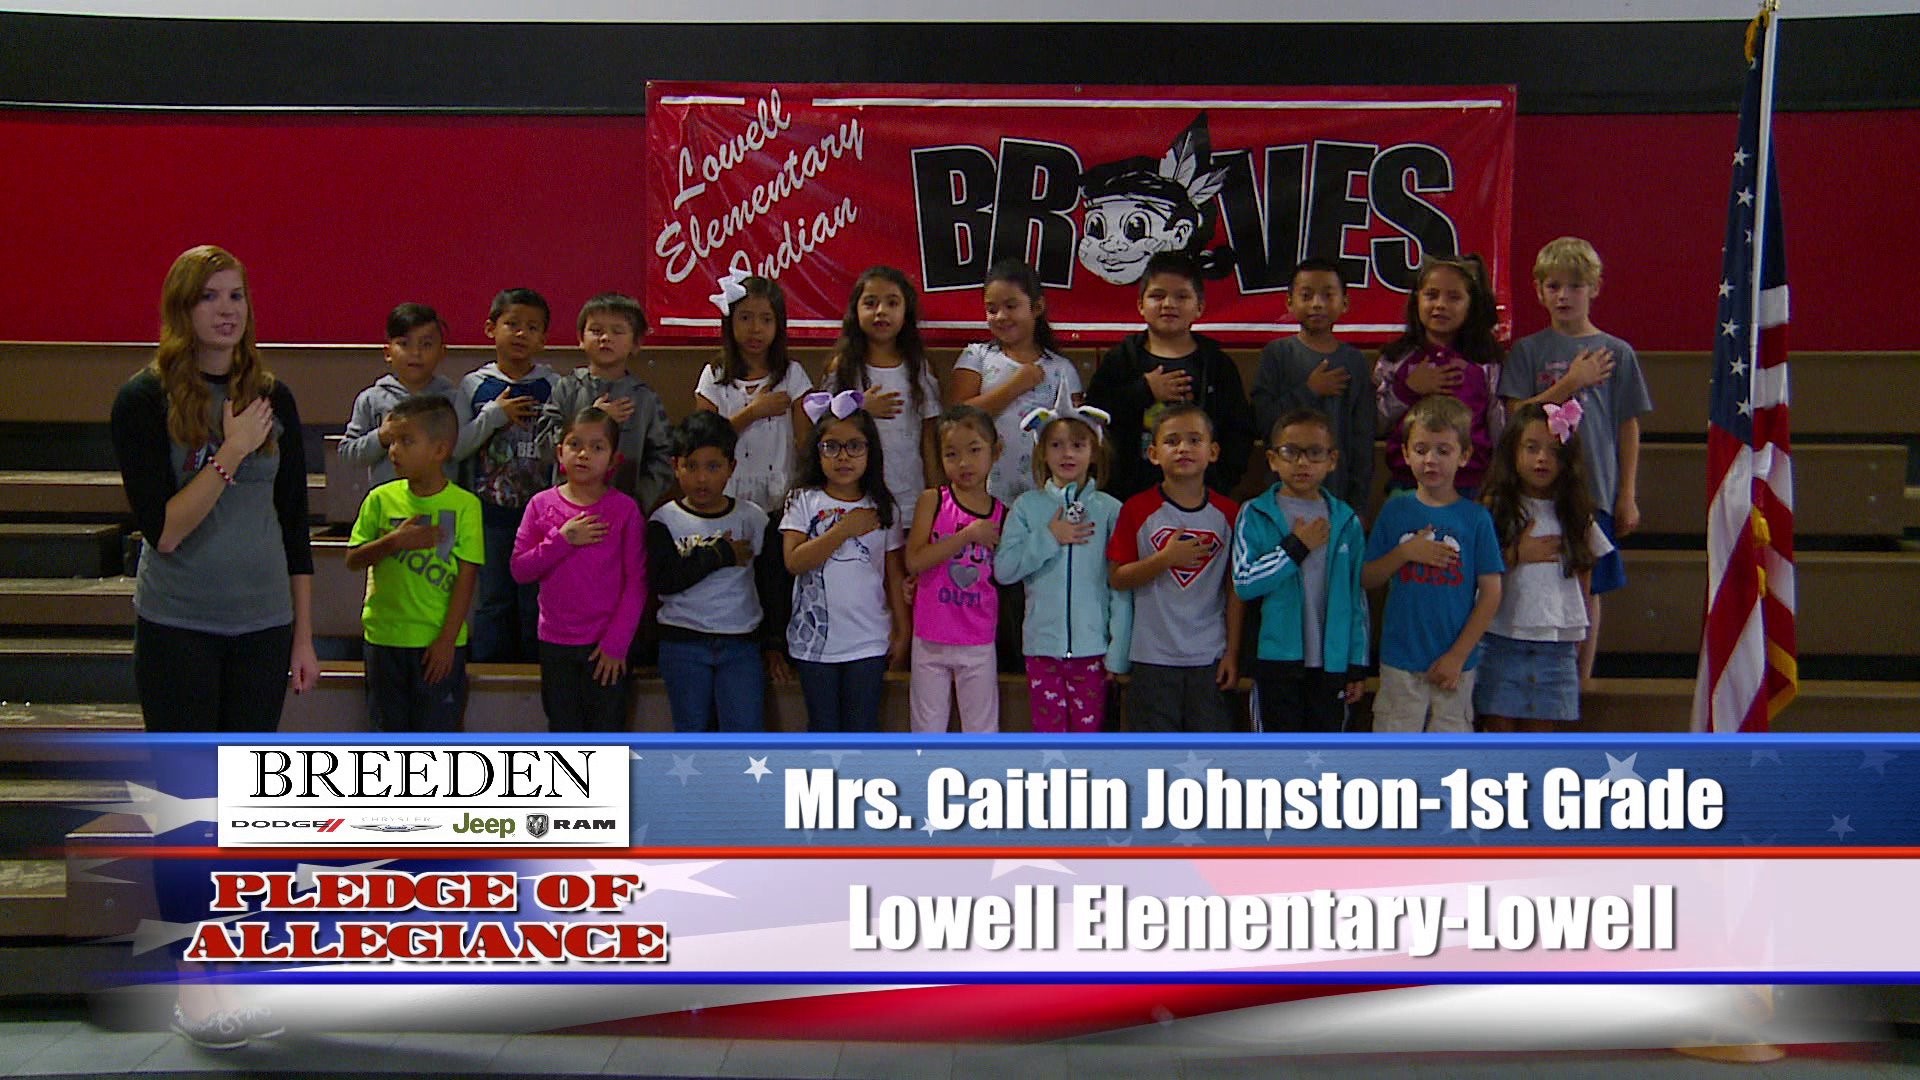 Mrs. Caitlin Johnston-1st Grade Lowell Elementary, Lowell